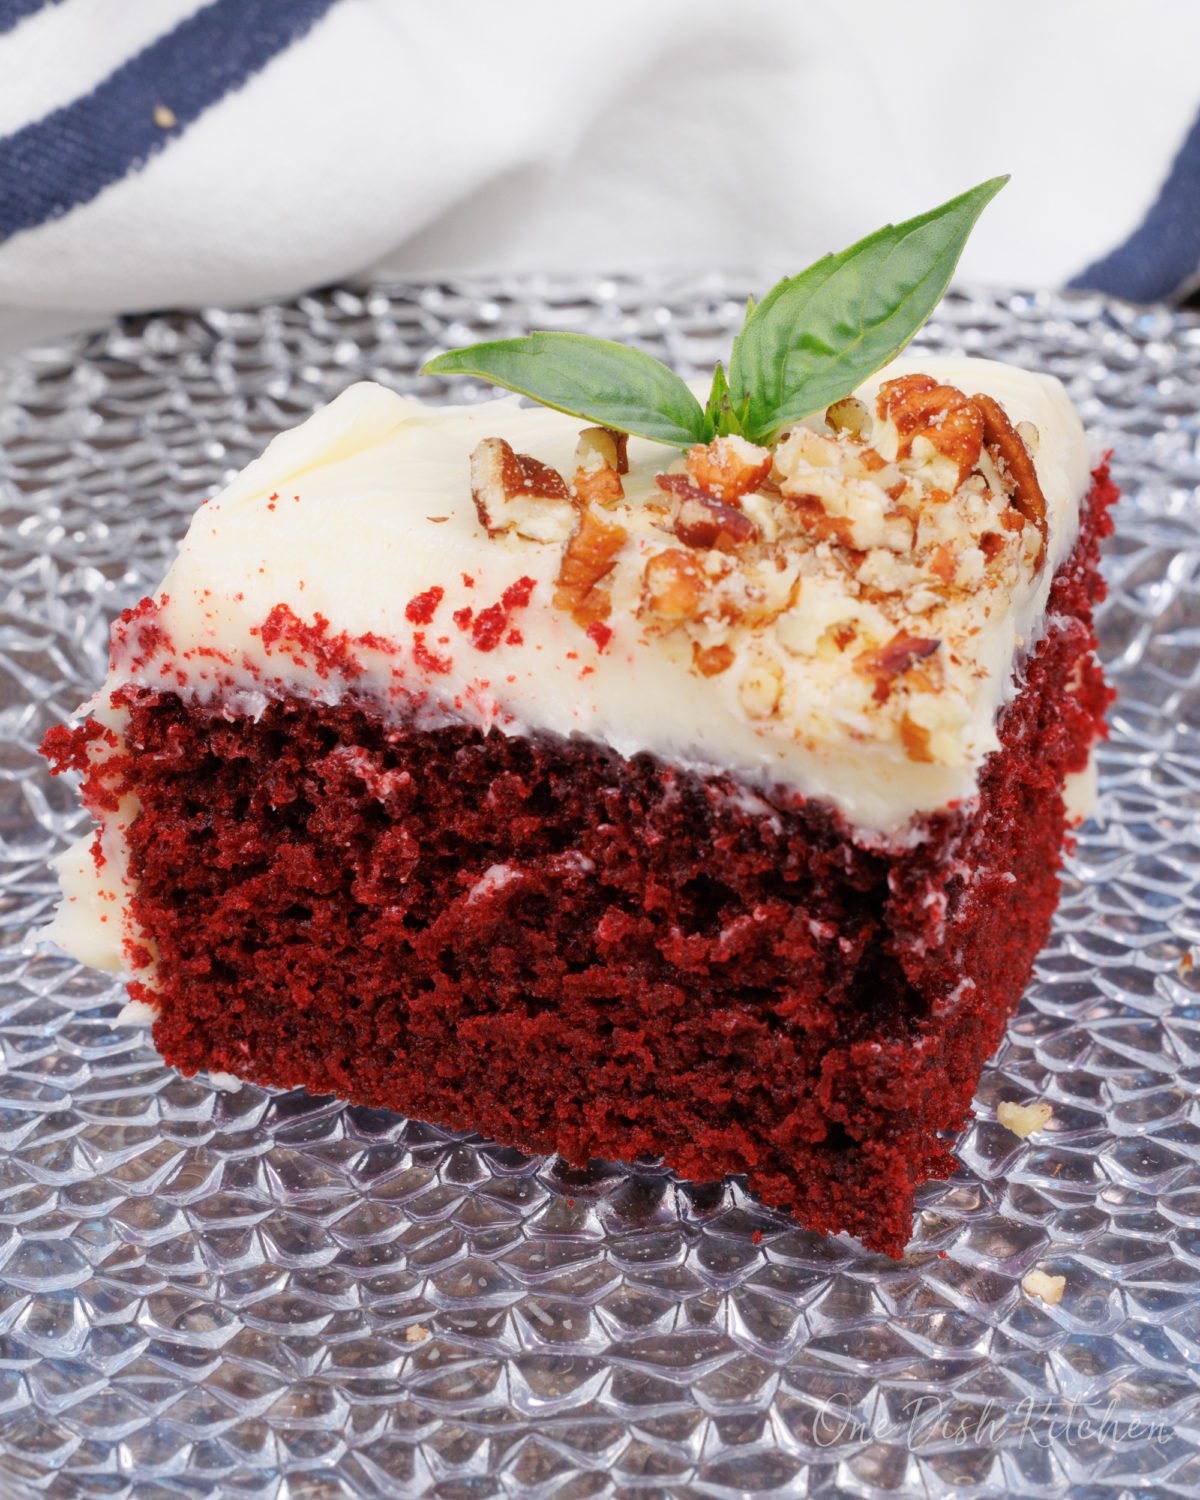 Best Red Velvet Cake Recipe: How to Make It